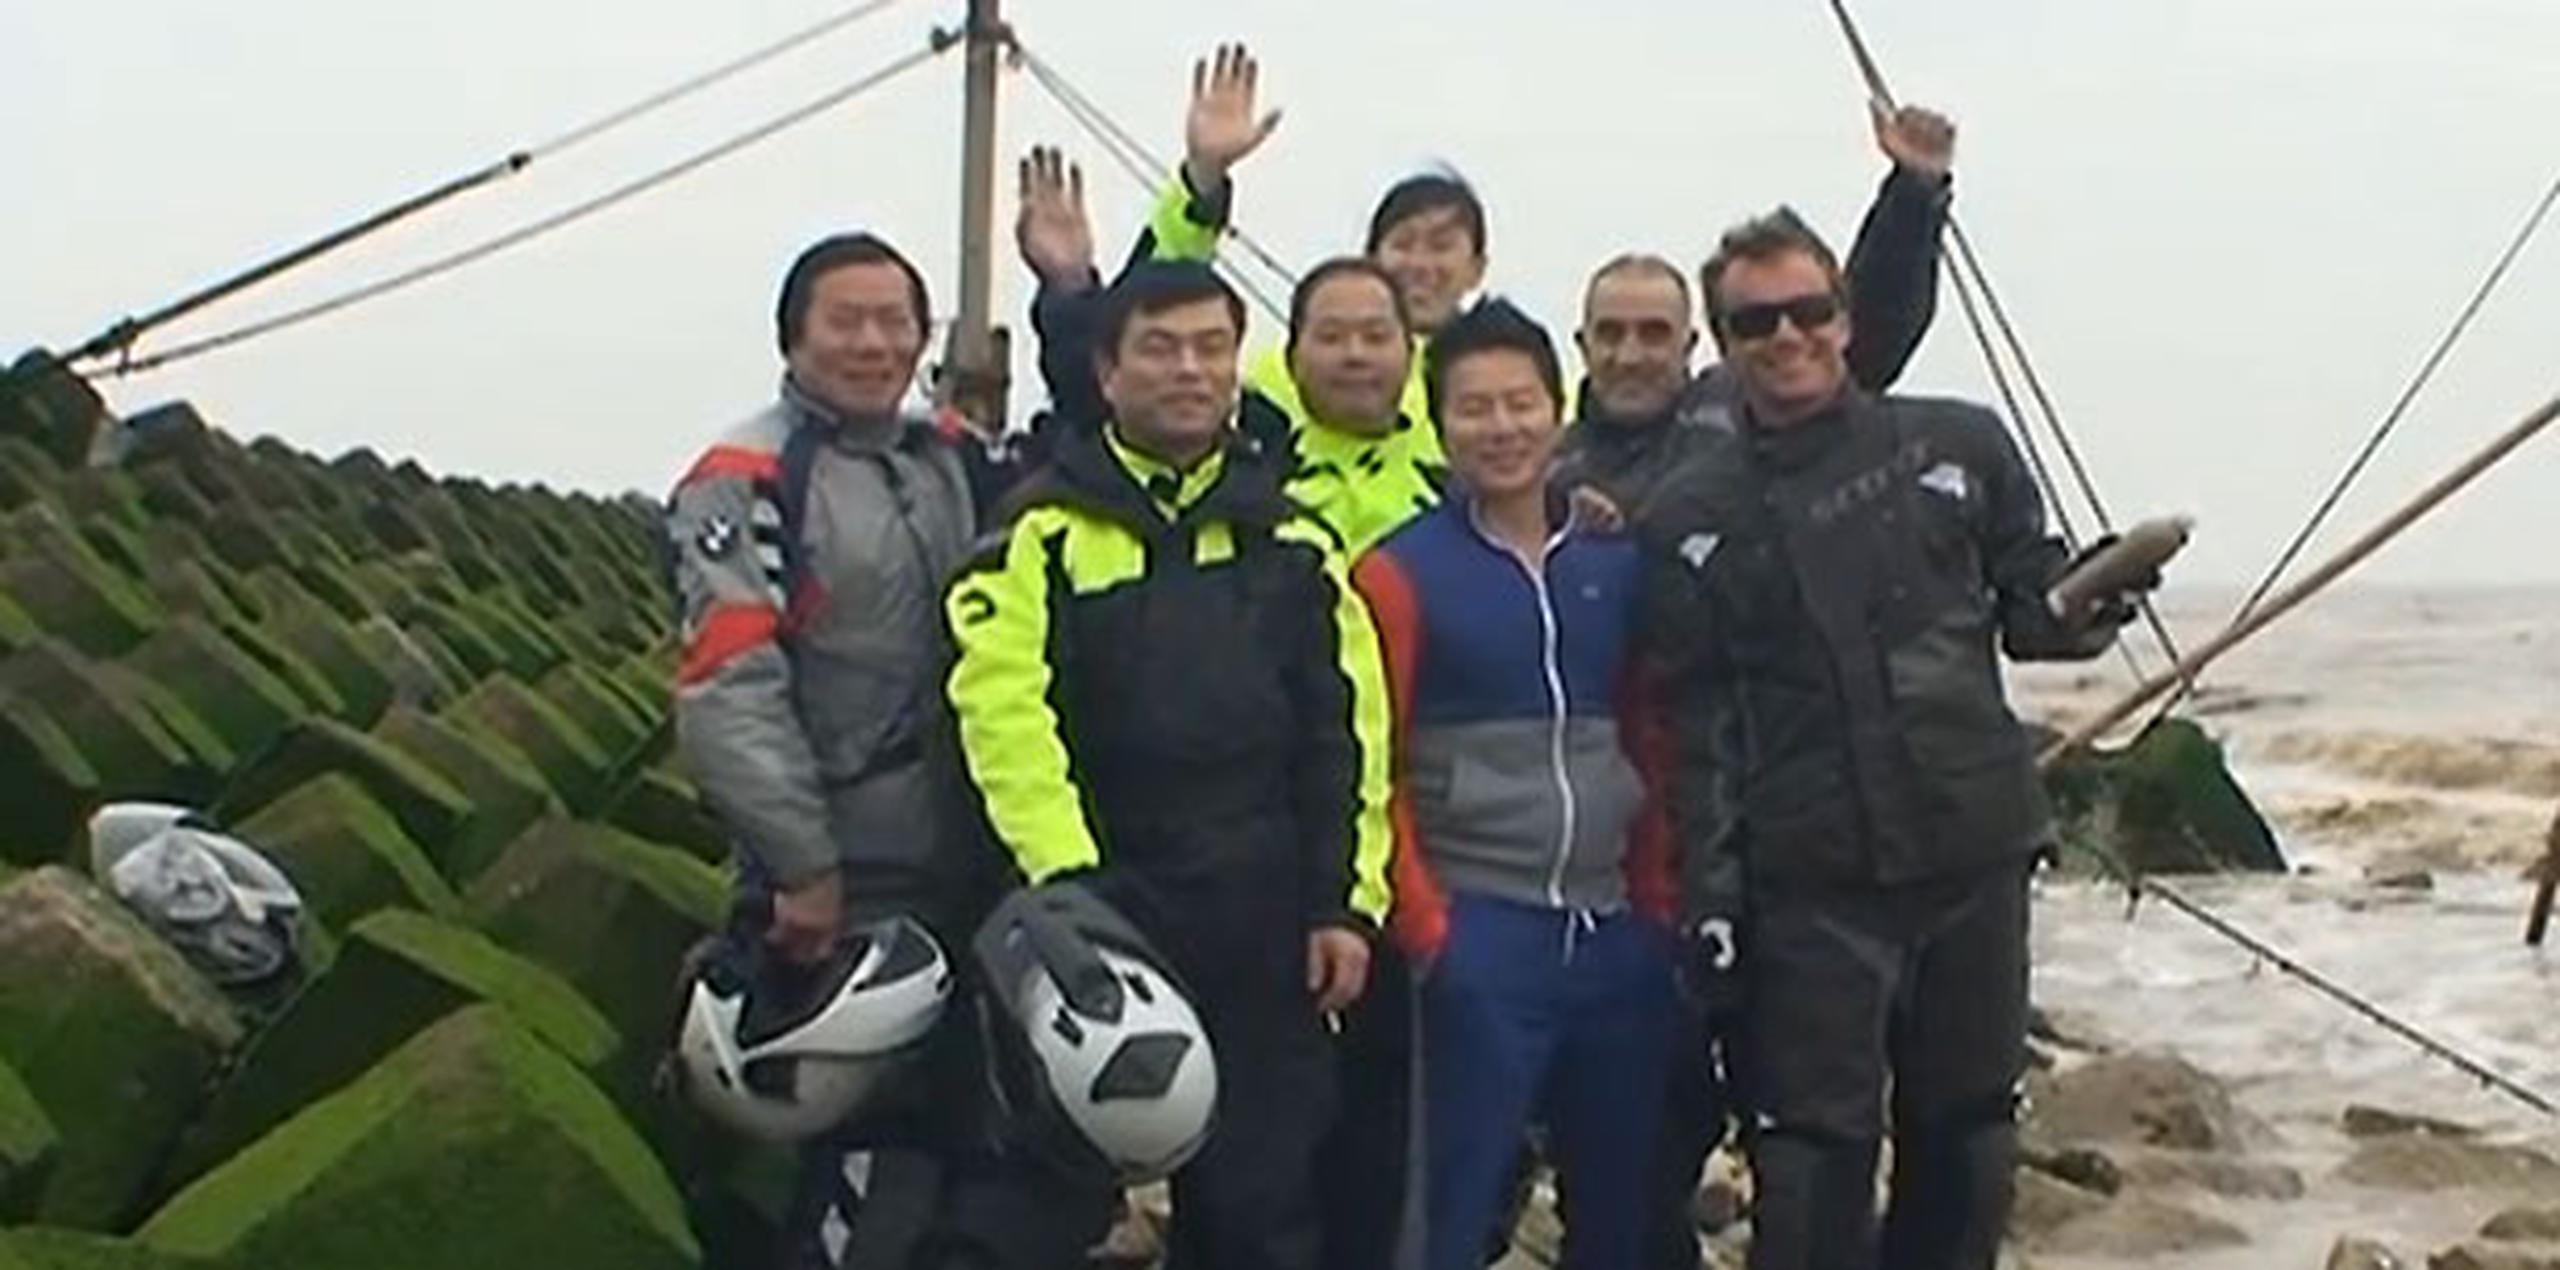 El aventurero español Ricard Tomás, junto con un brasileño y cinco chinos, intentará ser el primero en ir en moto desde la ciudad china de Shanghái, a orillas del océano Pacífico, hasta Lisboa, junto al Atlántico. (EFE)